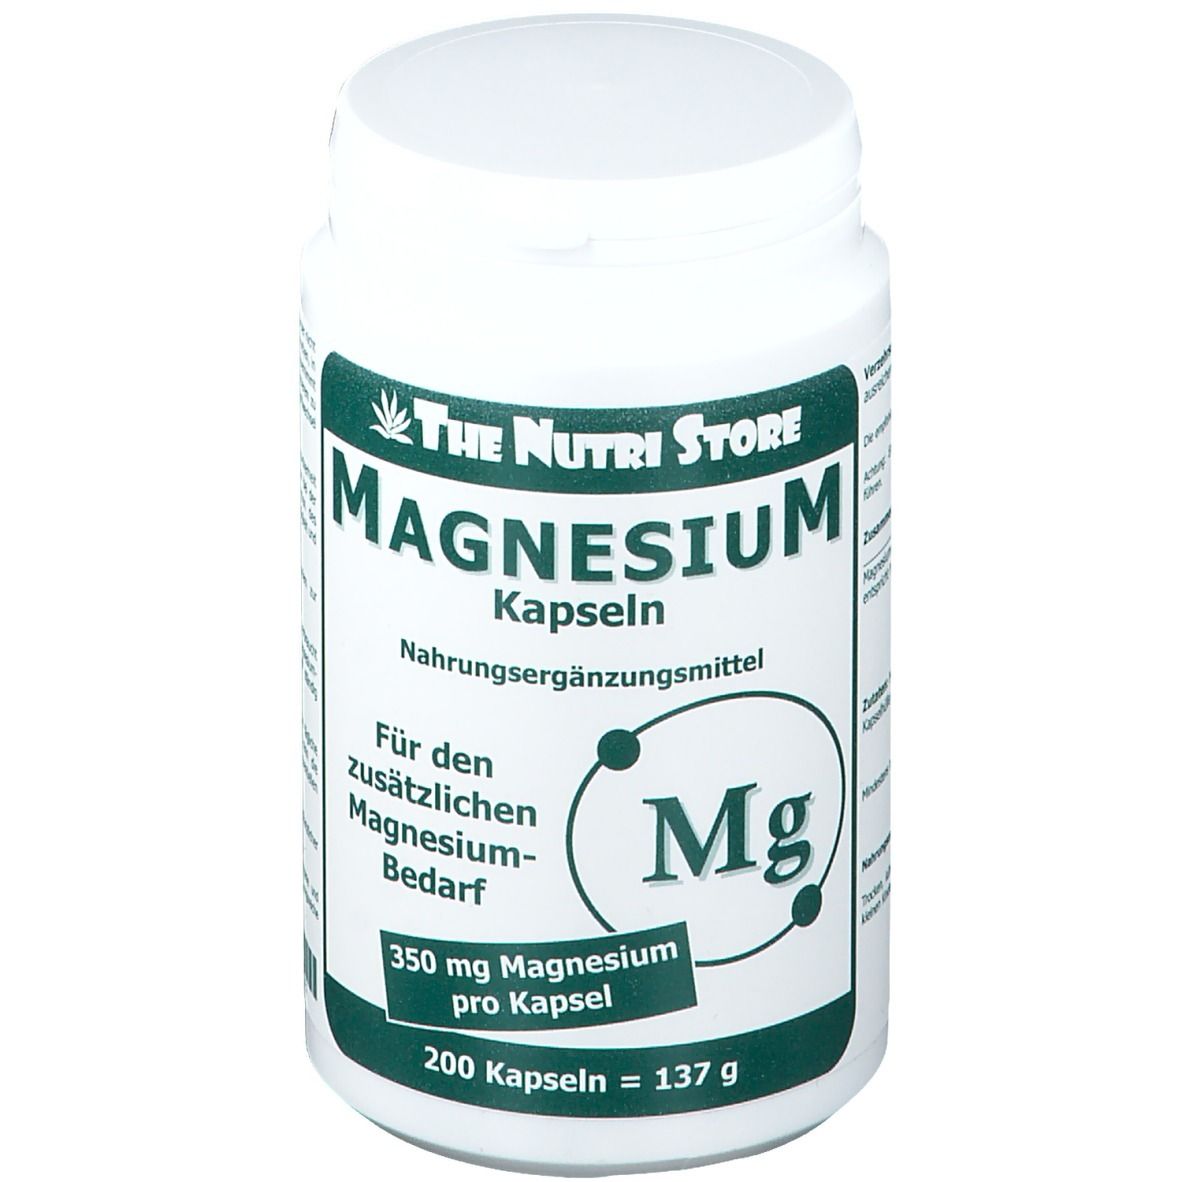 The Nutri Store Magnesium